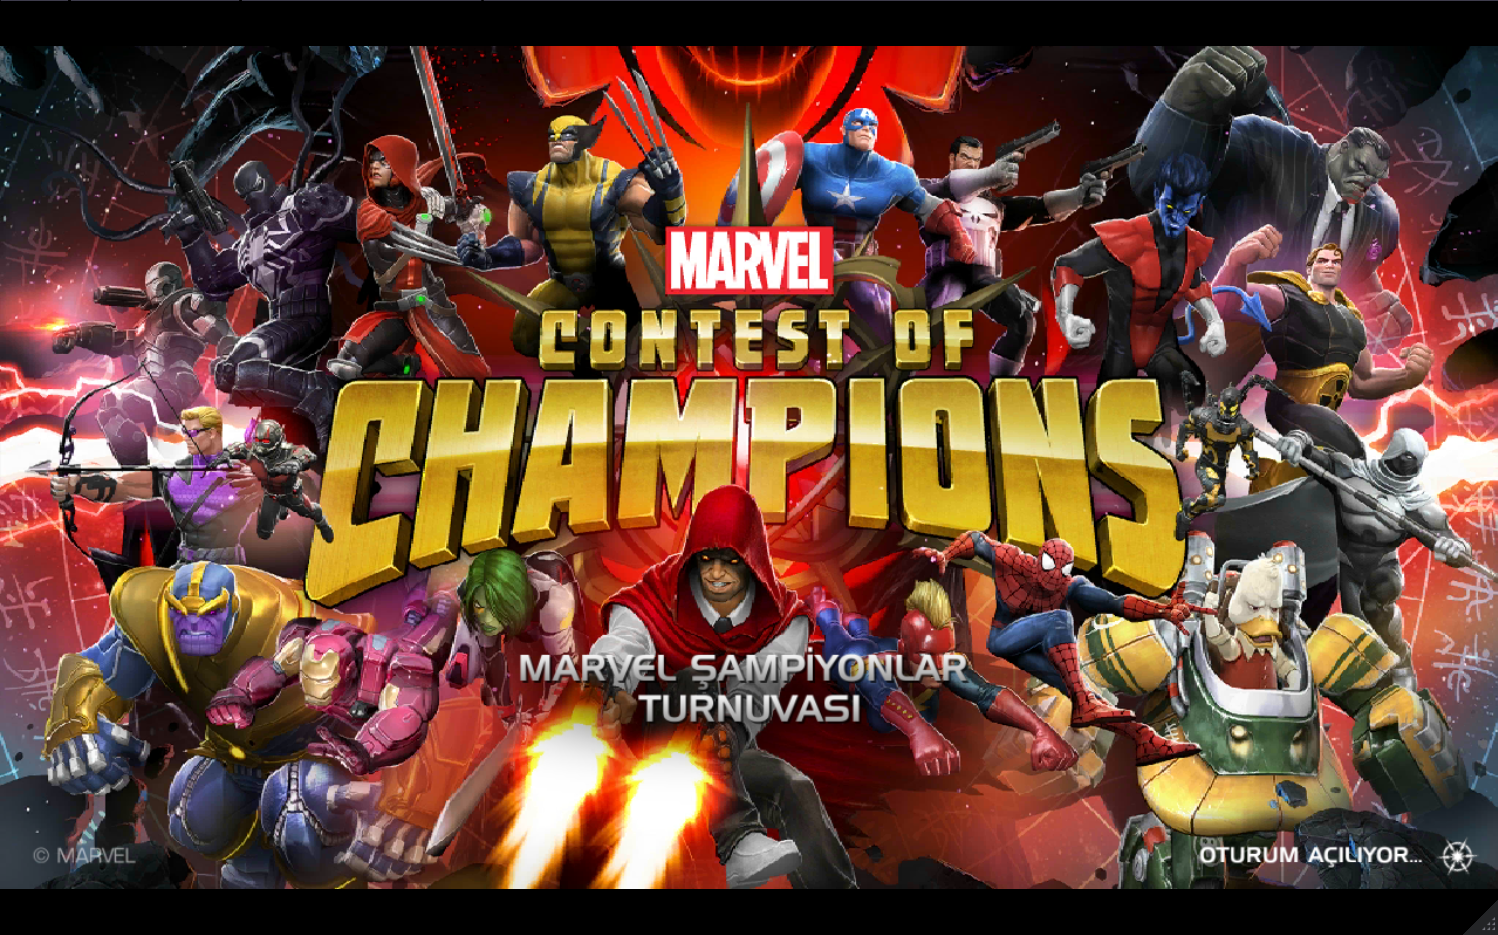 Marvel Şampiyonlar Turnuvası ( Marvel Contest of Champions ) Genel bilgi ve Rehber